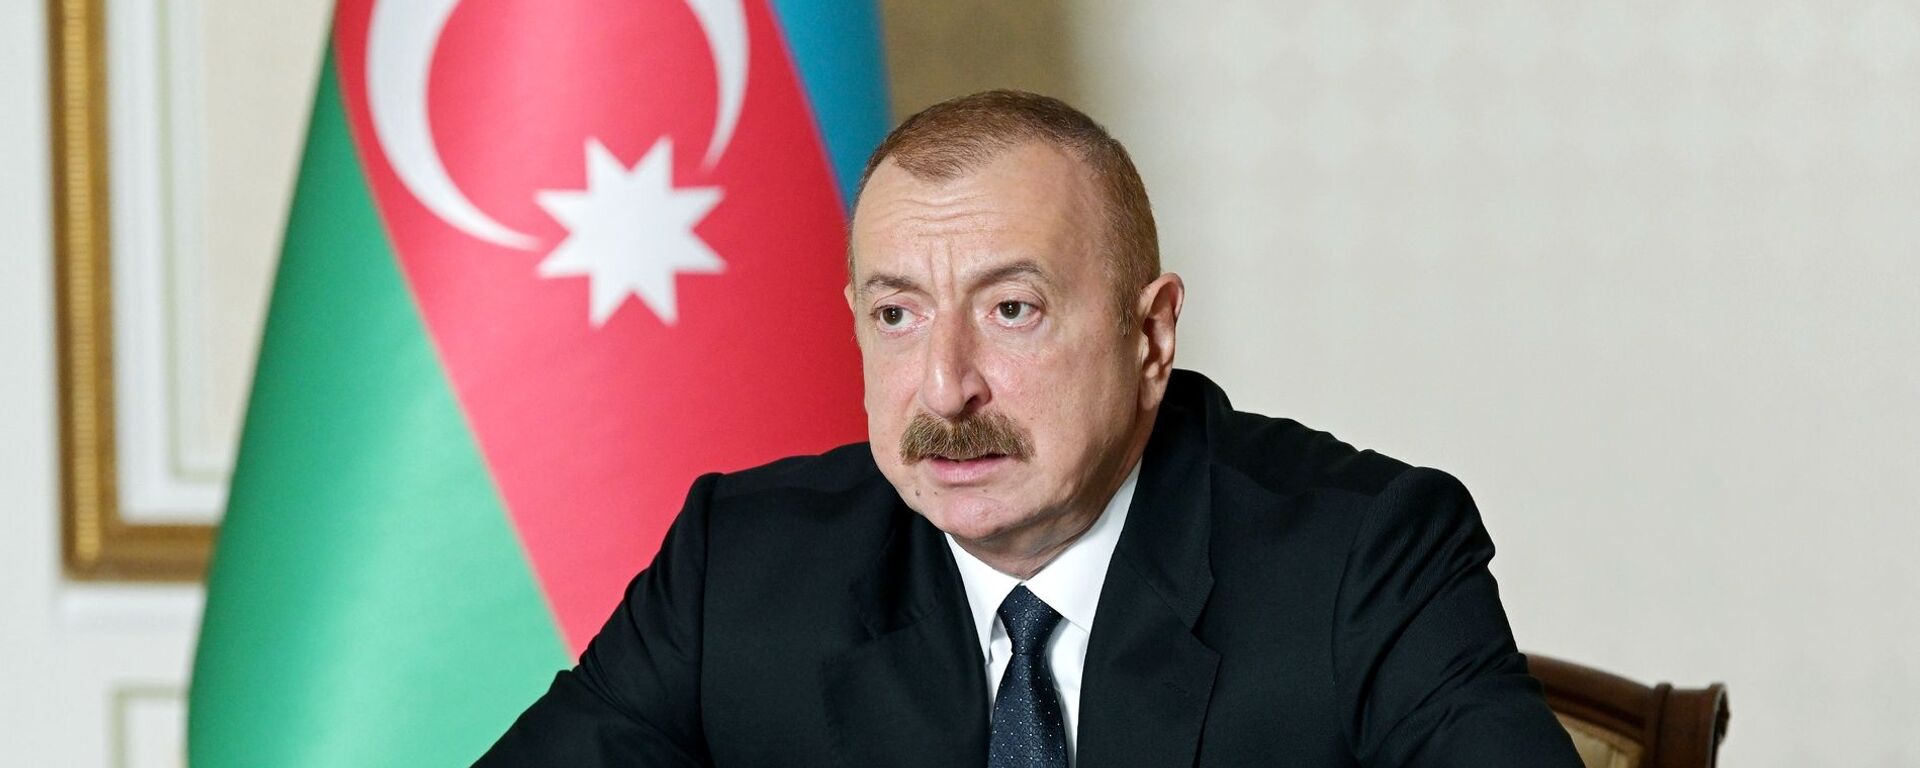 Iljam Alíev, presidente de Azerbaiyán - Sputnik Mundo, 1920, 28.09.2021